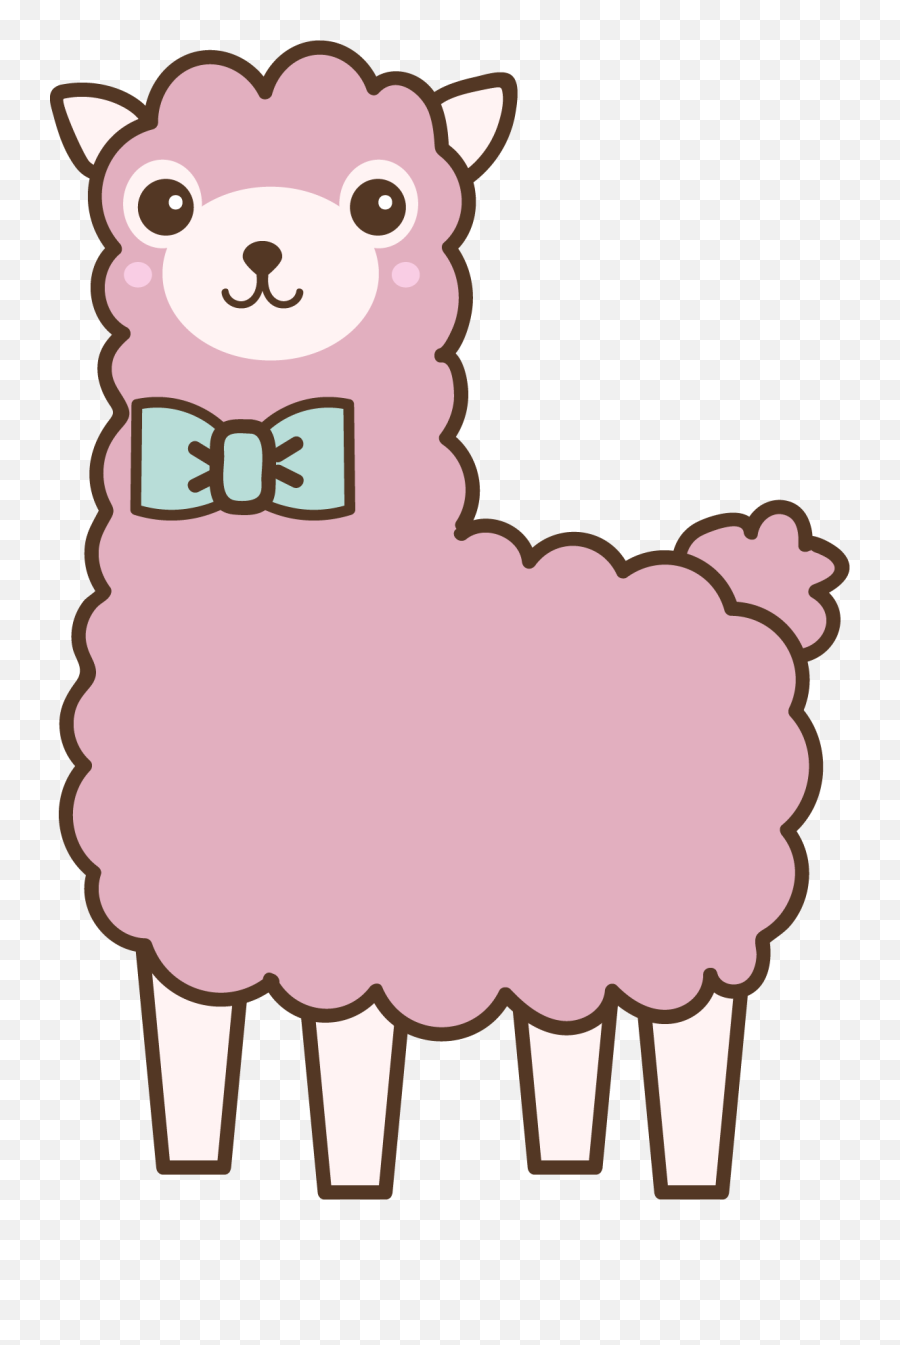 Pink Llama With A Bowtie Clipart Free Download Transparent - Dibujo De Llama Fácil Emoji,Llama Clipart